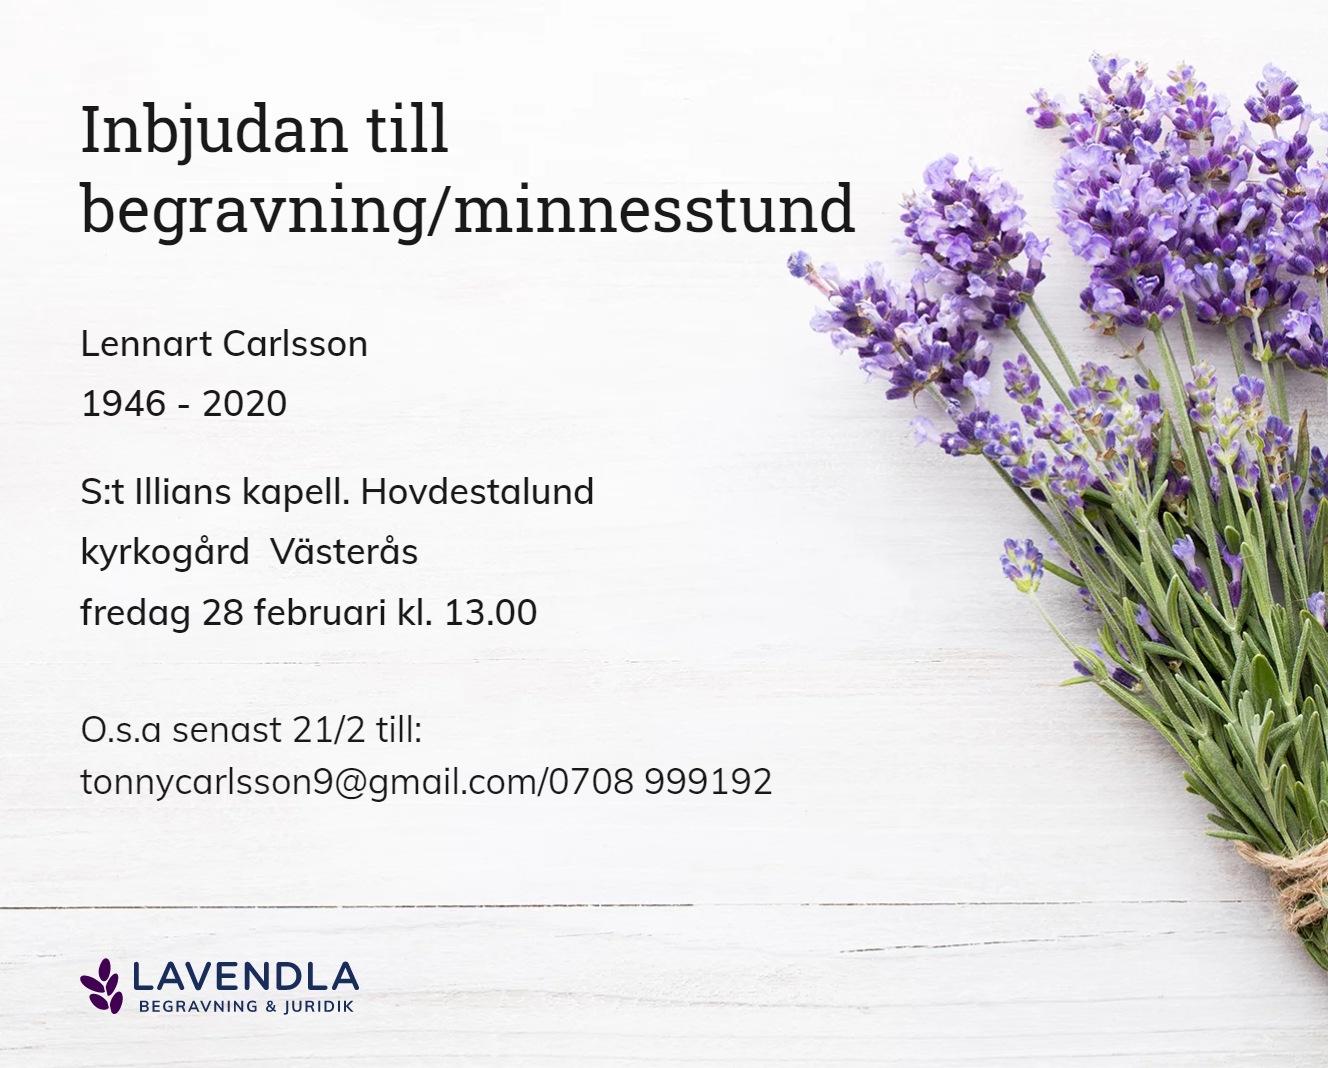 Inbjudningskort till ceremonin för Lennart Carlsson